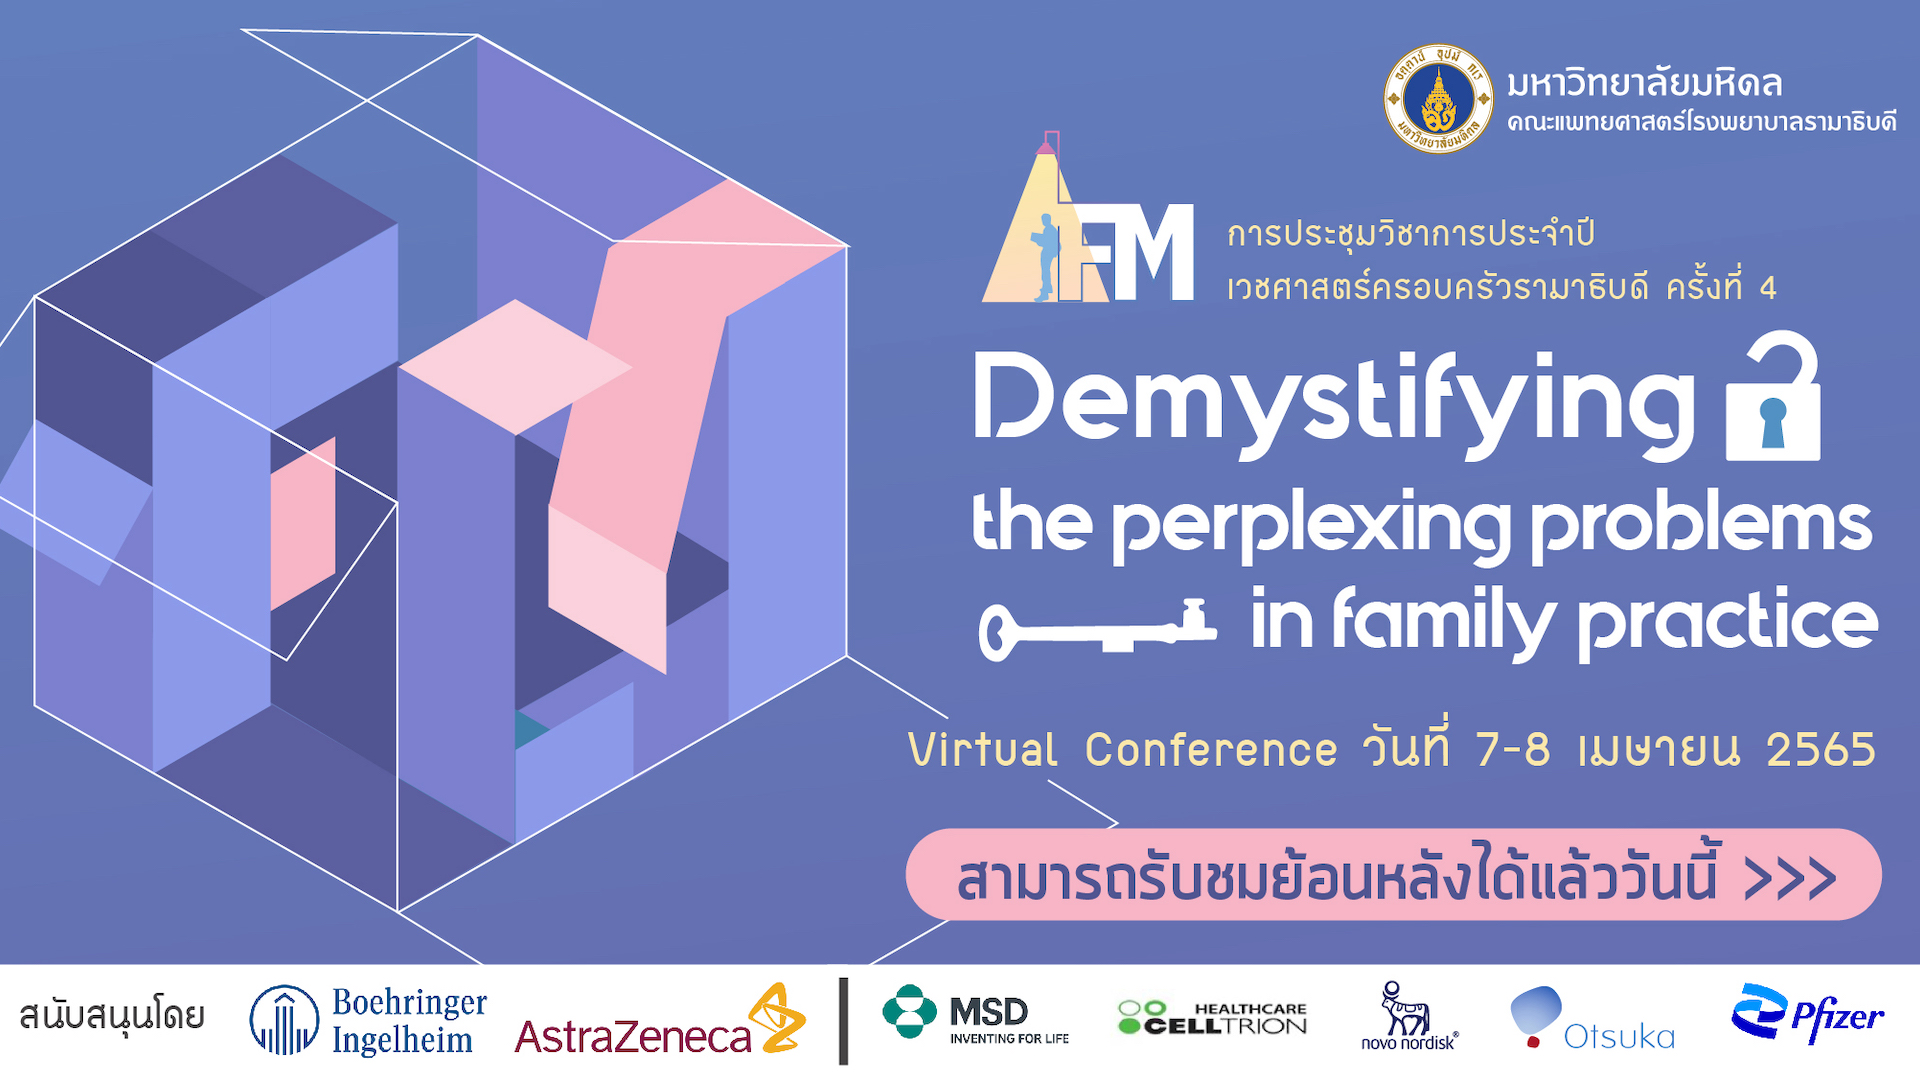 รับชม VDO การประชุมวิชาการประจำปีเวชศาสตร์ครอบครัวรามาธิบดี ครั้งที่ 4 Demystifying the perplexing problems in primary care